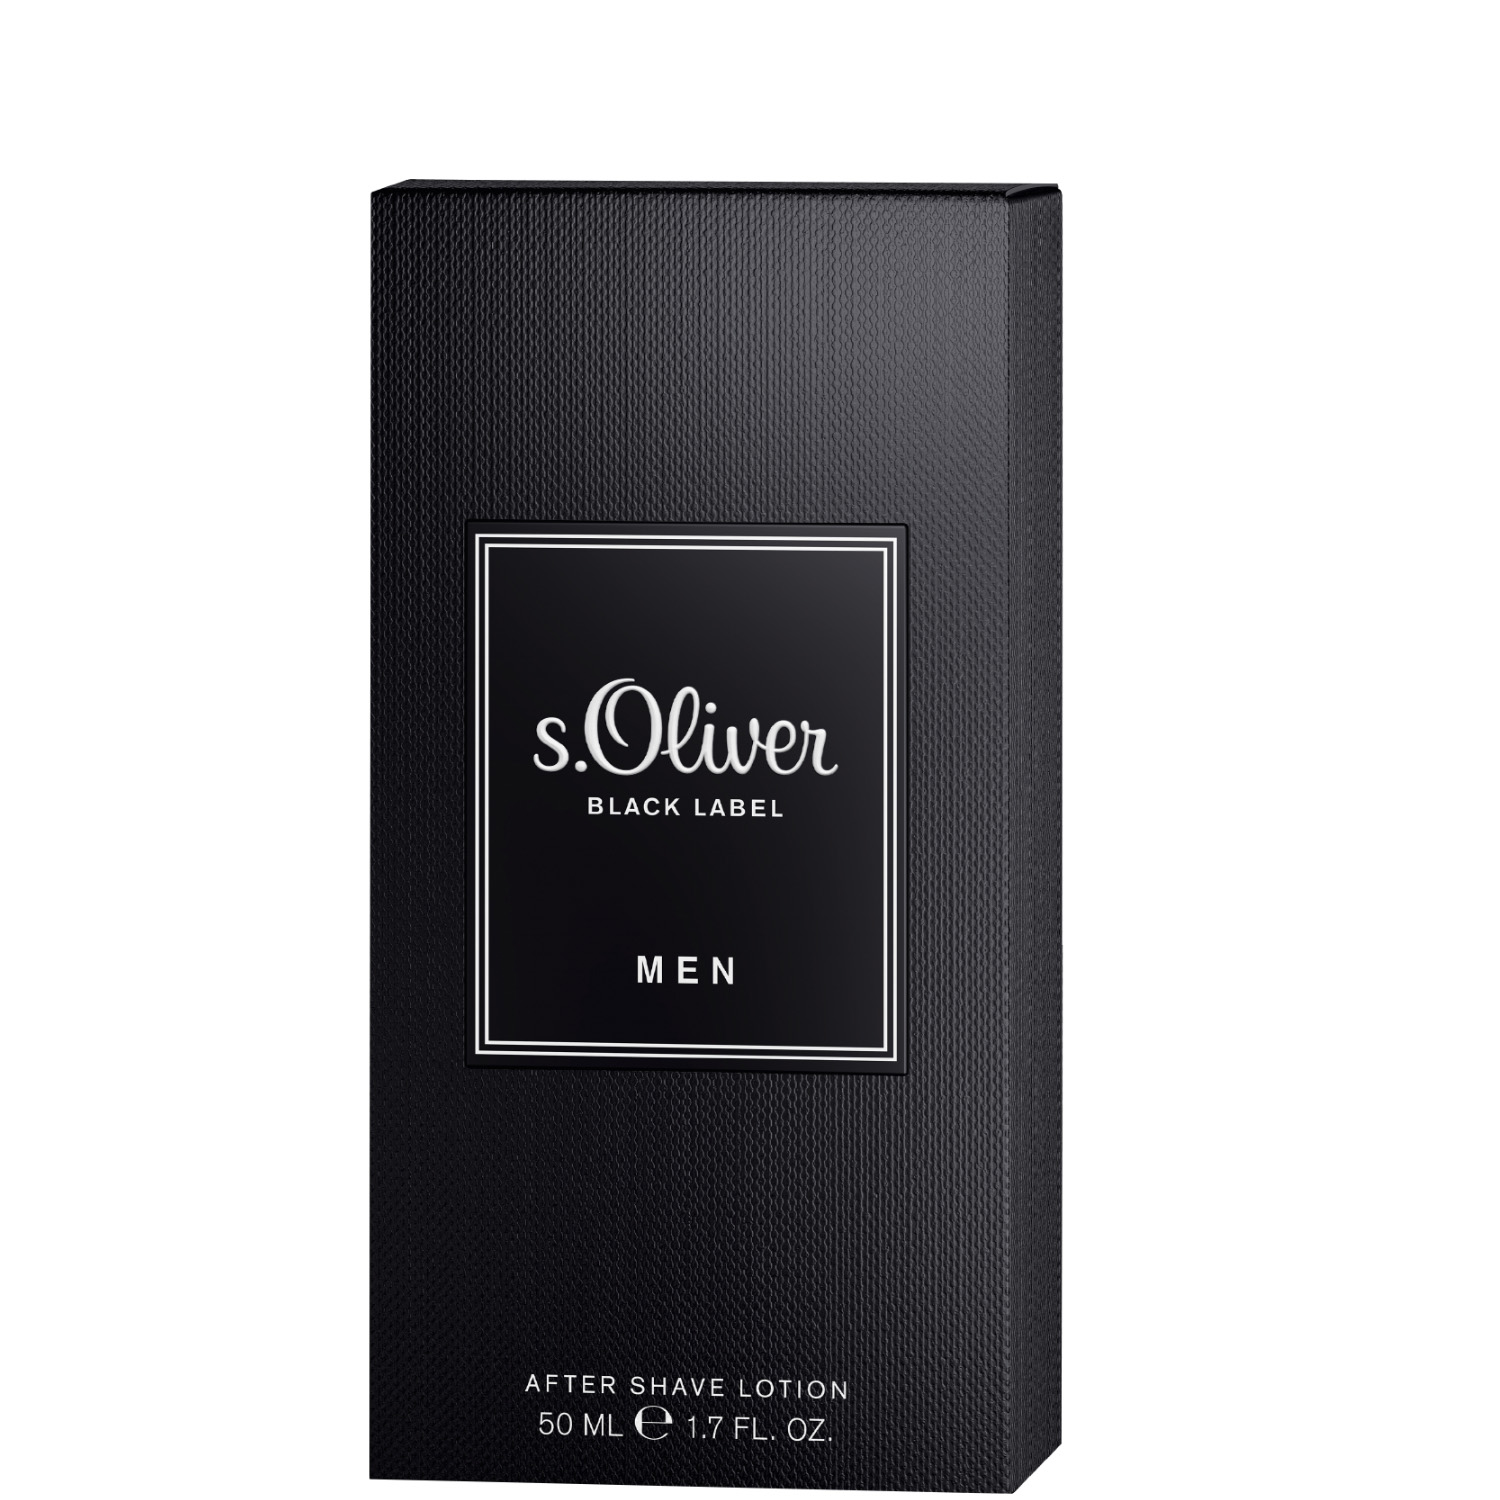 S.Oliver Black Label Men After Shave Lotion 50ml